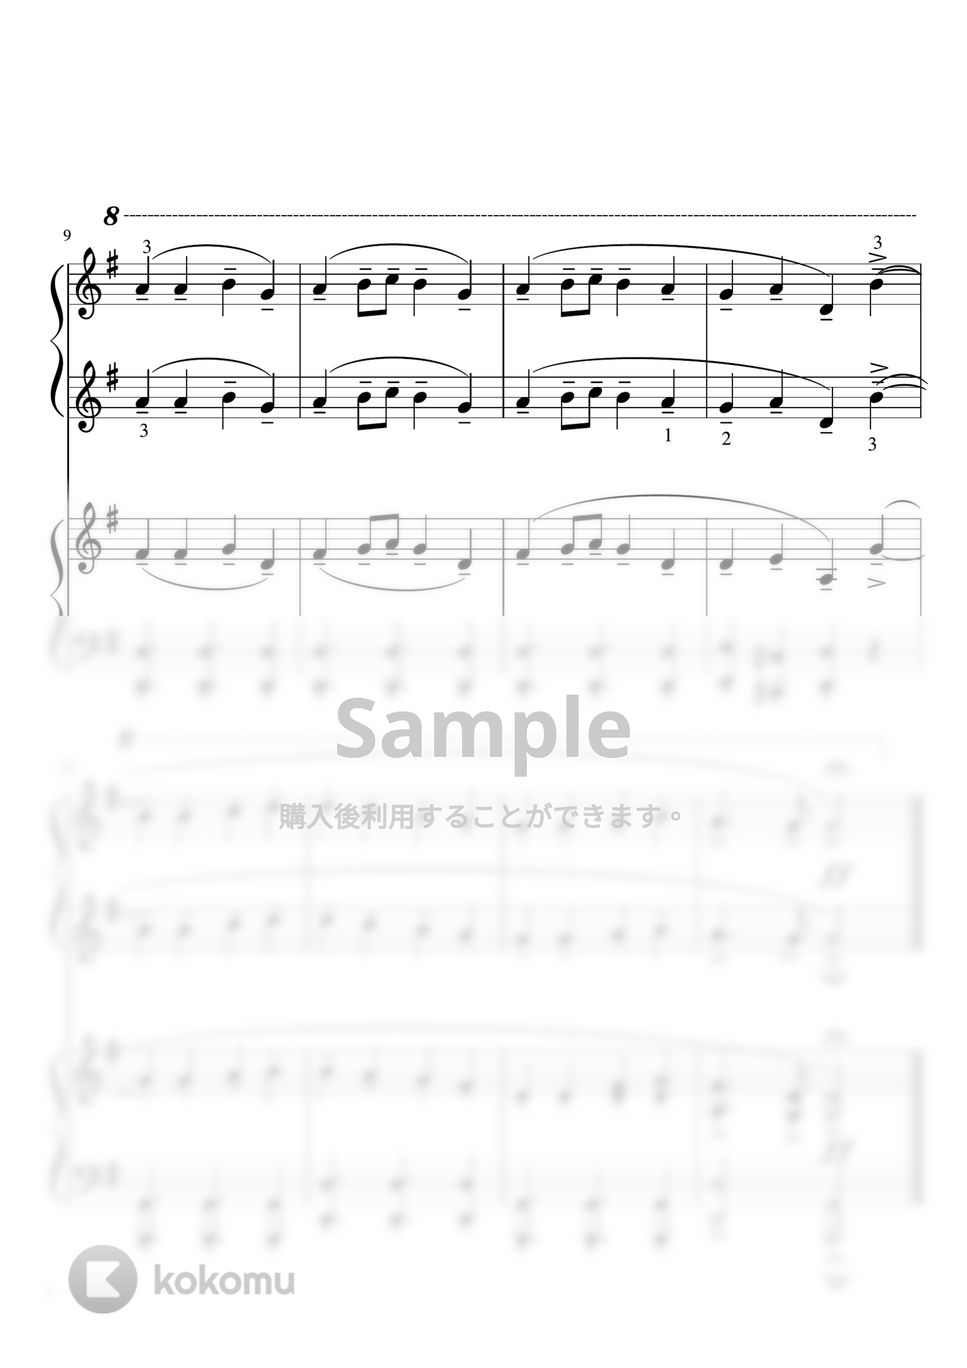 ベートーヴェン - 歓喜の歌 (Gdur ピアノ連弾・セカンド中級 プリモ初級) by pfkaori